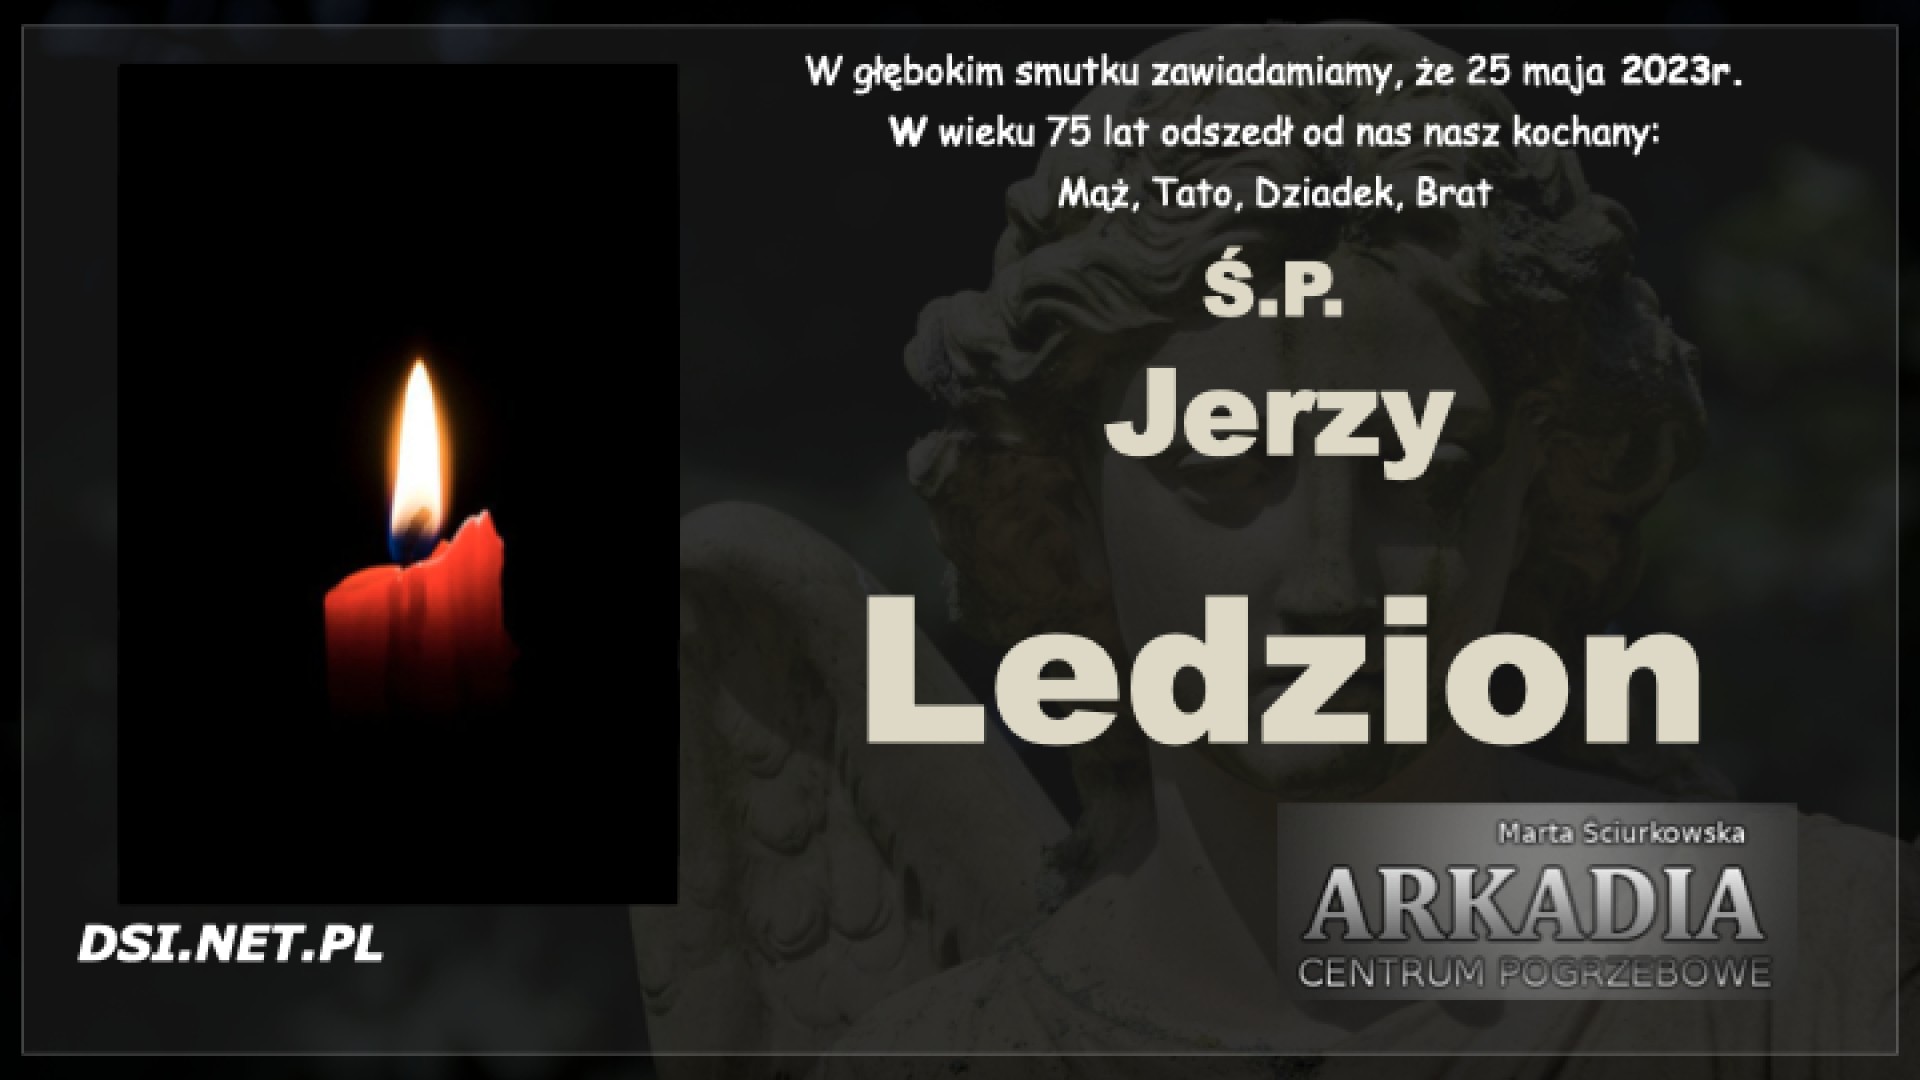 Ś.P. Jerzy Ledzion